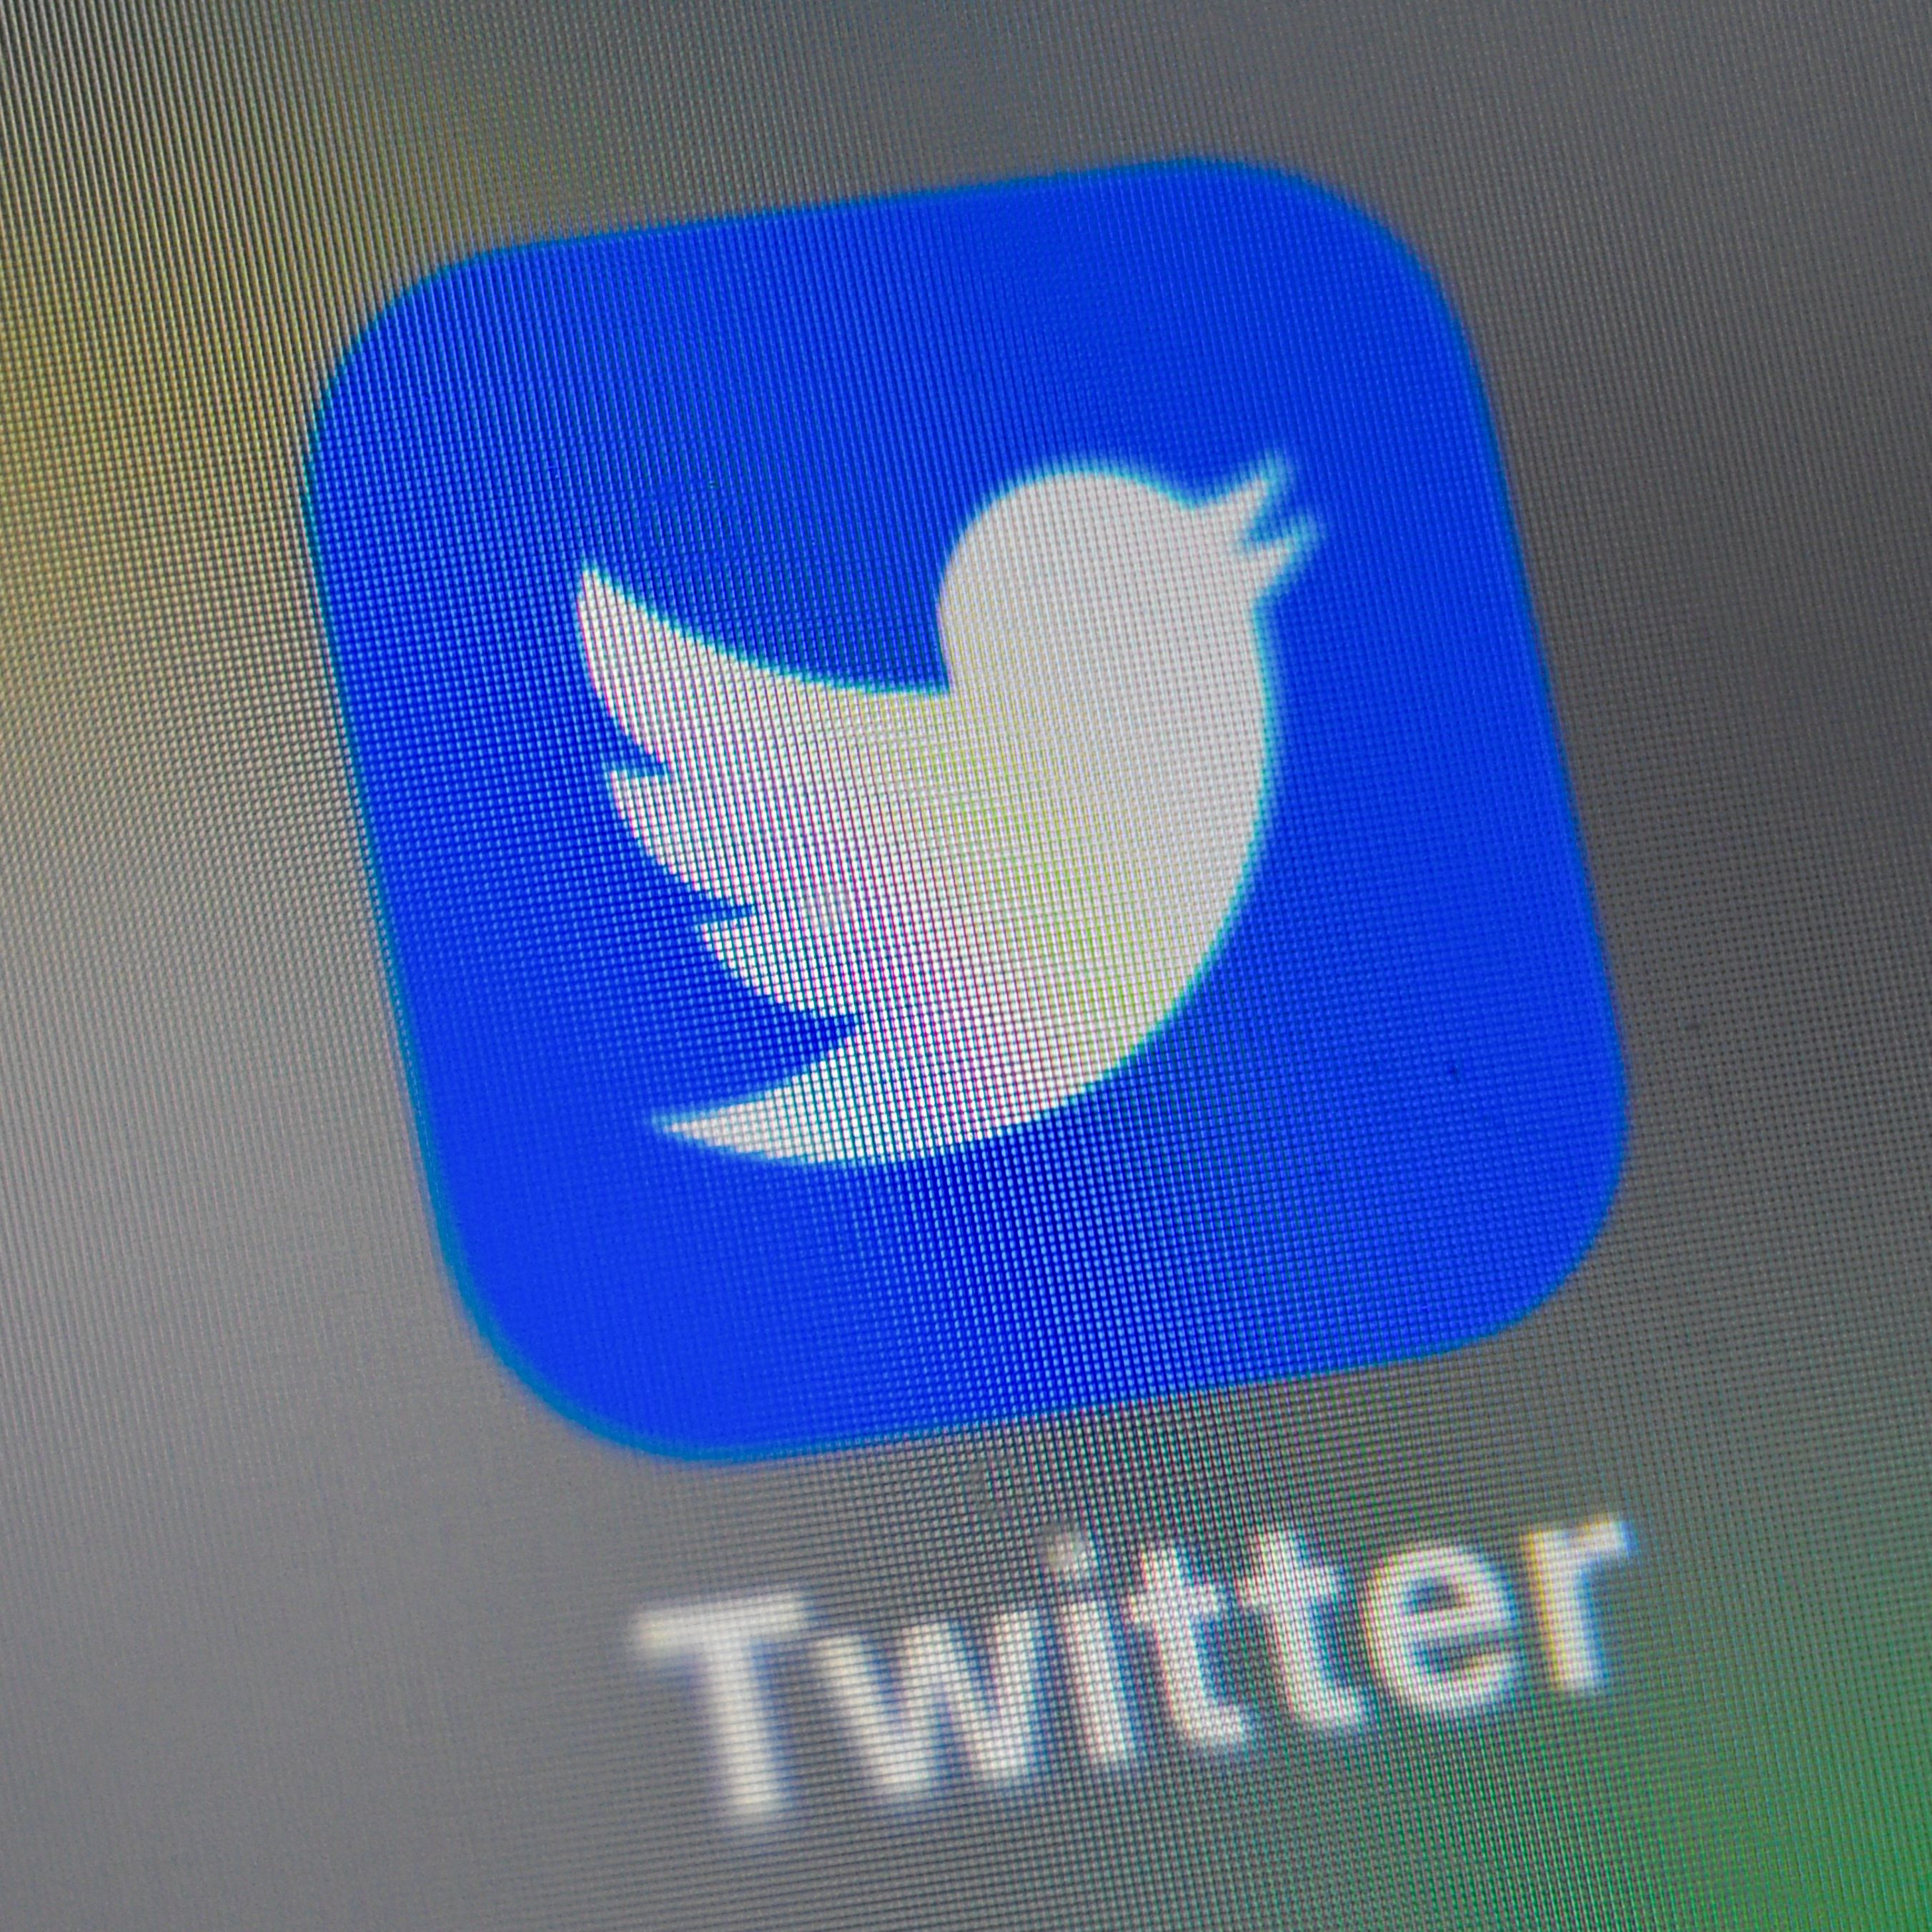 加州共和黨主席疑遭禁言 推特帳戶被封